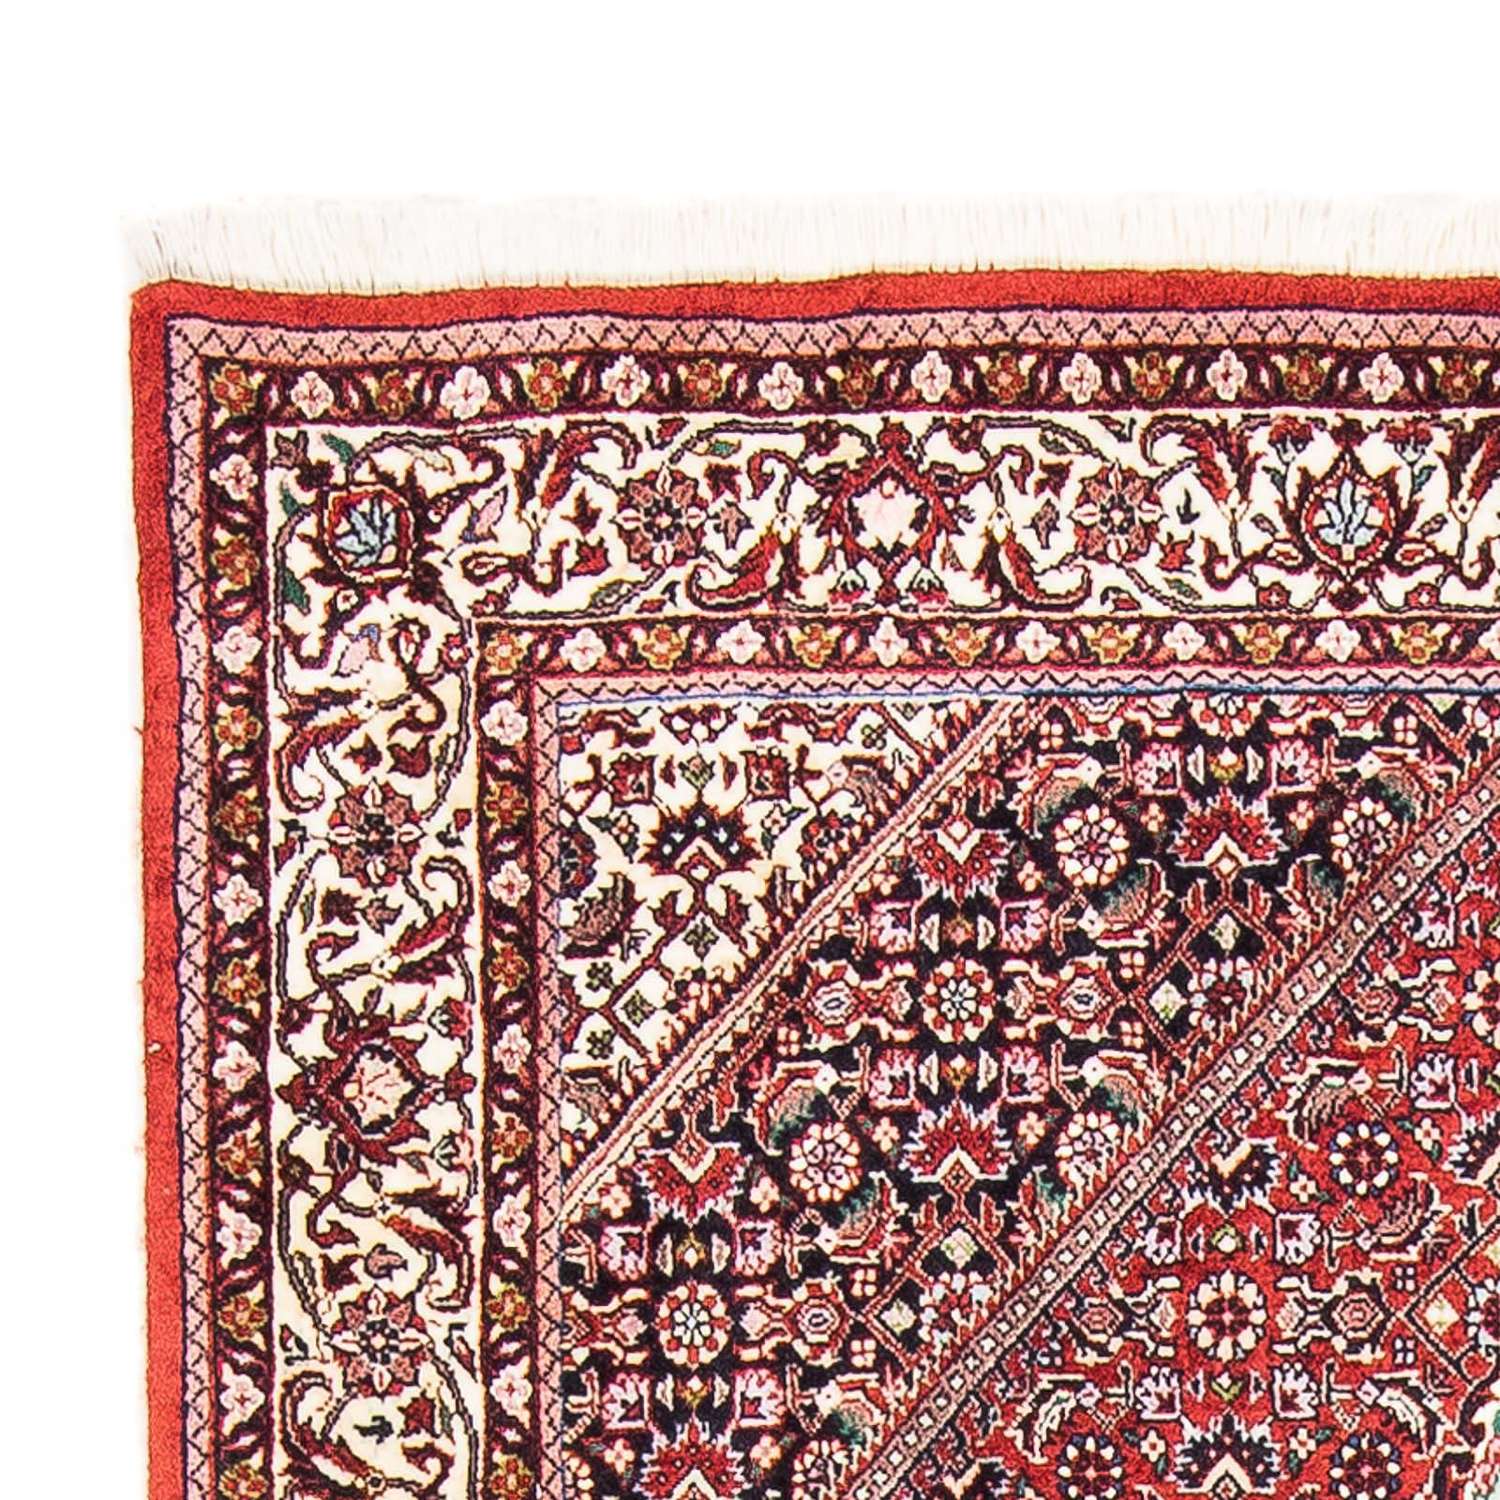 Perzisch tapijt - Bijar - 178 x 108 cm - rood